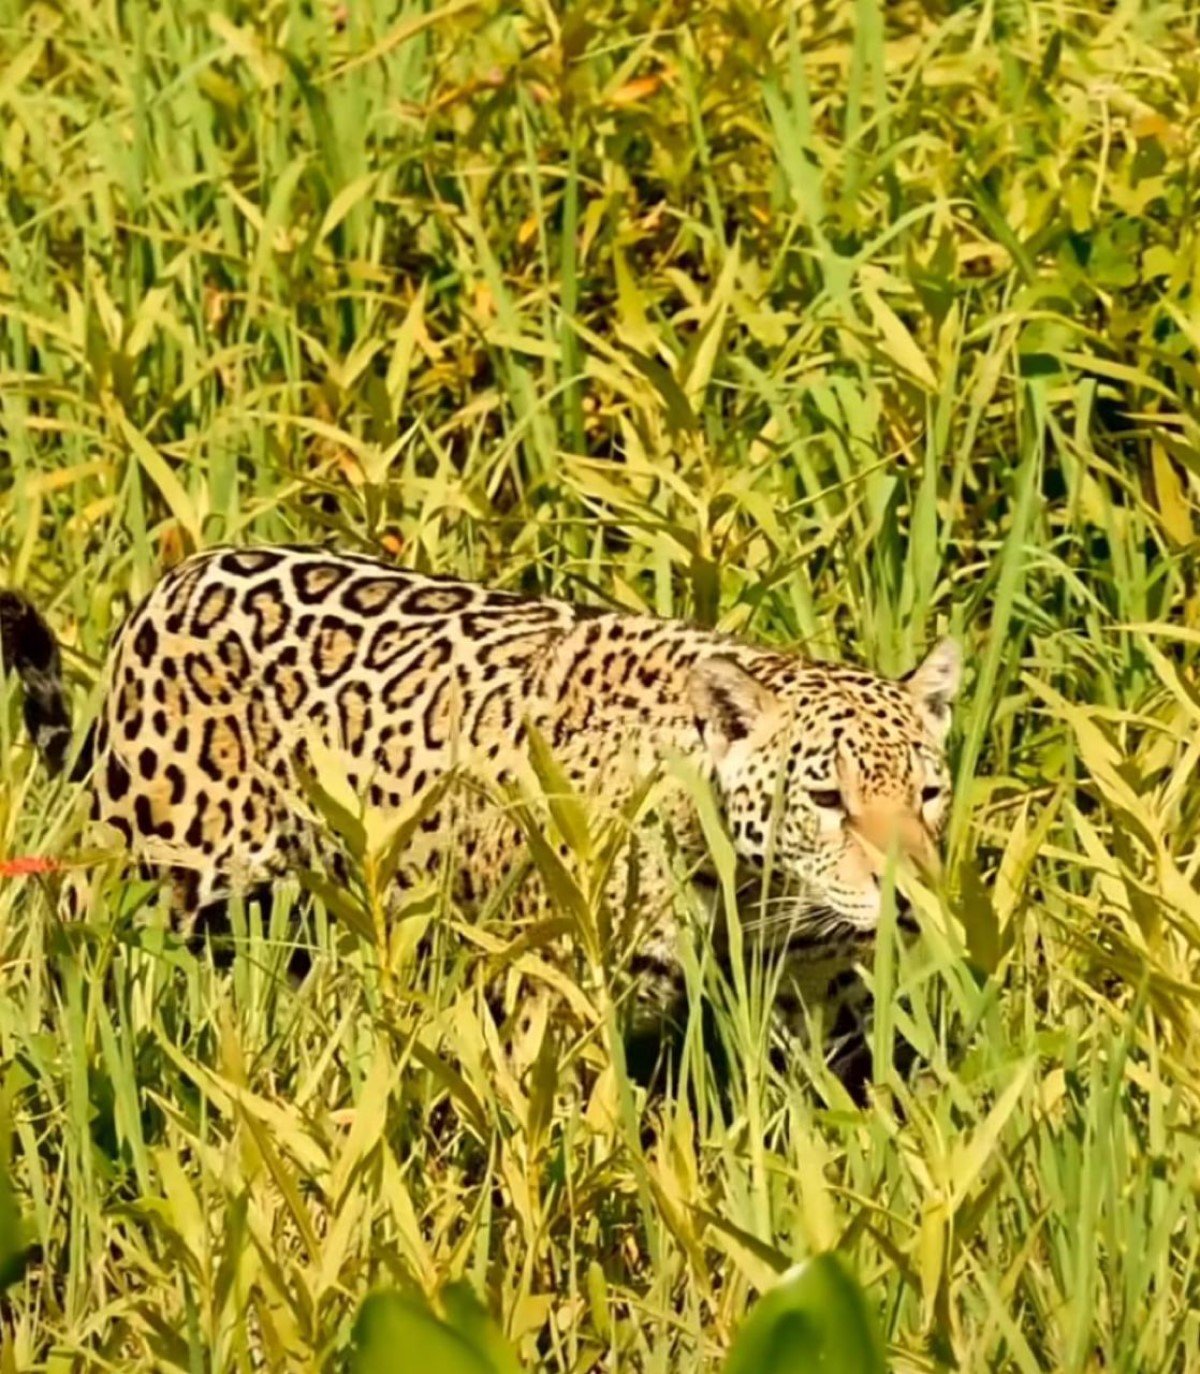 Uma onça-pintada, majestosa em suas cores vibrantes, foi flagrada em um tranquilo passeio pela exuberante vegetação do Pantanal Mato-grossense.